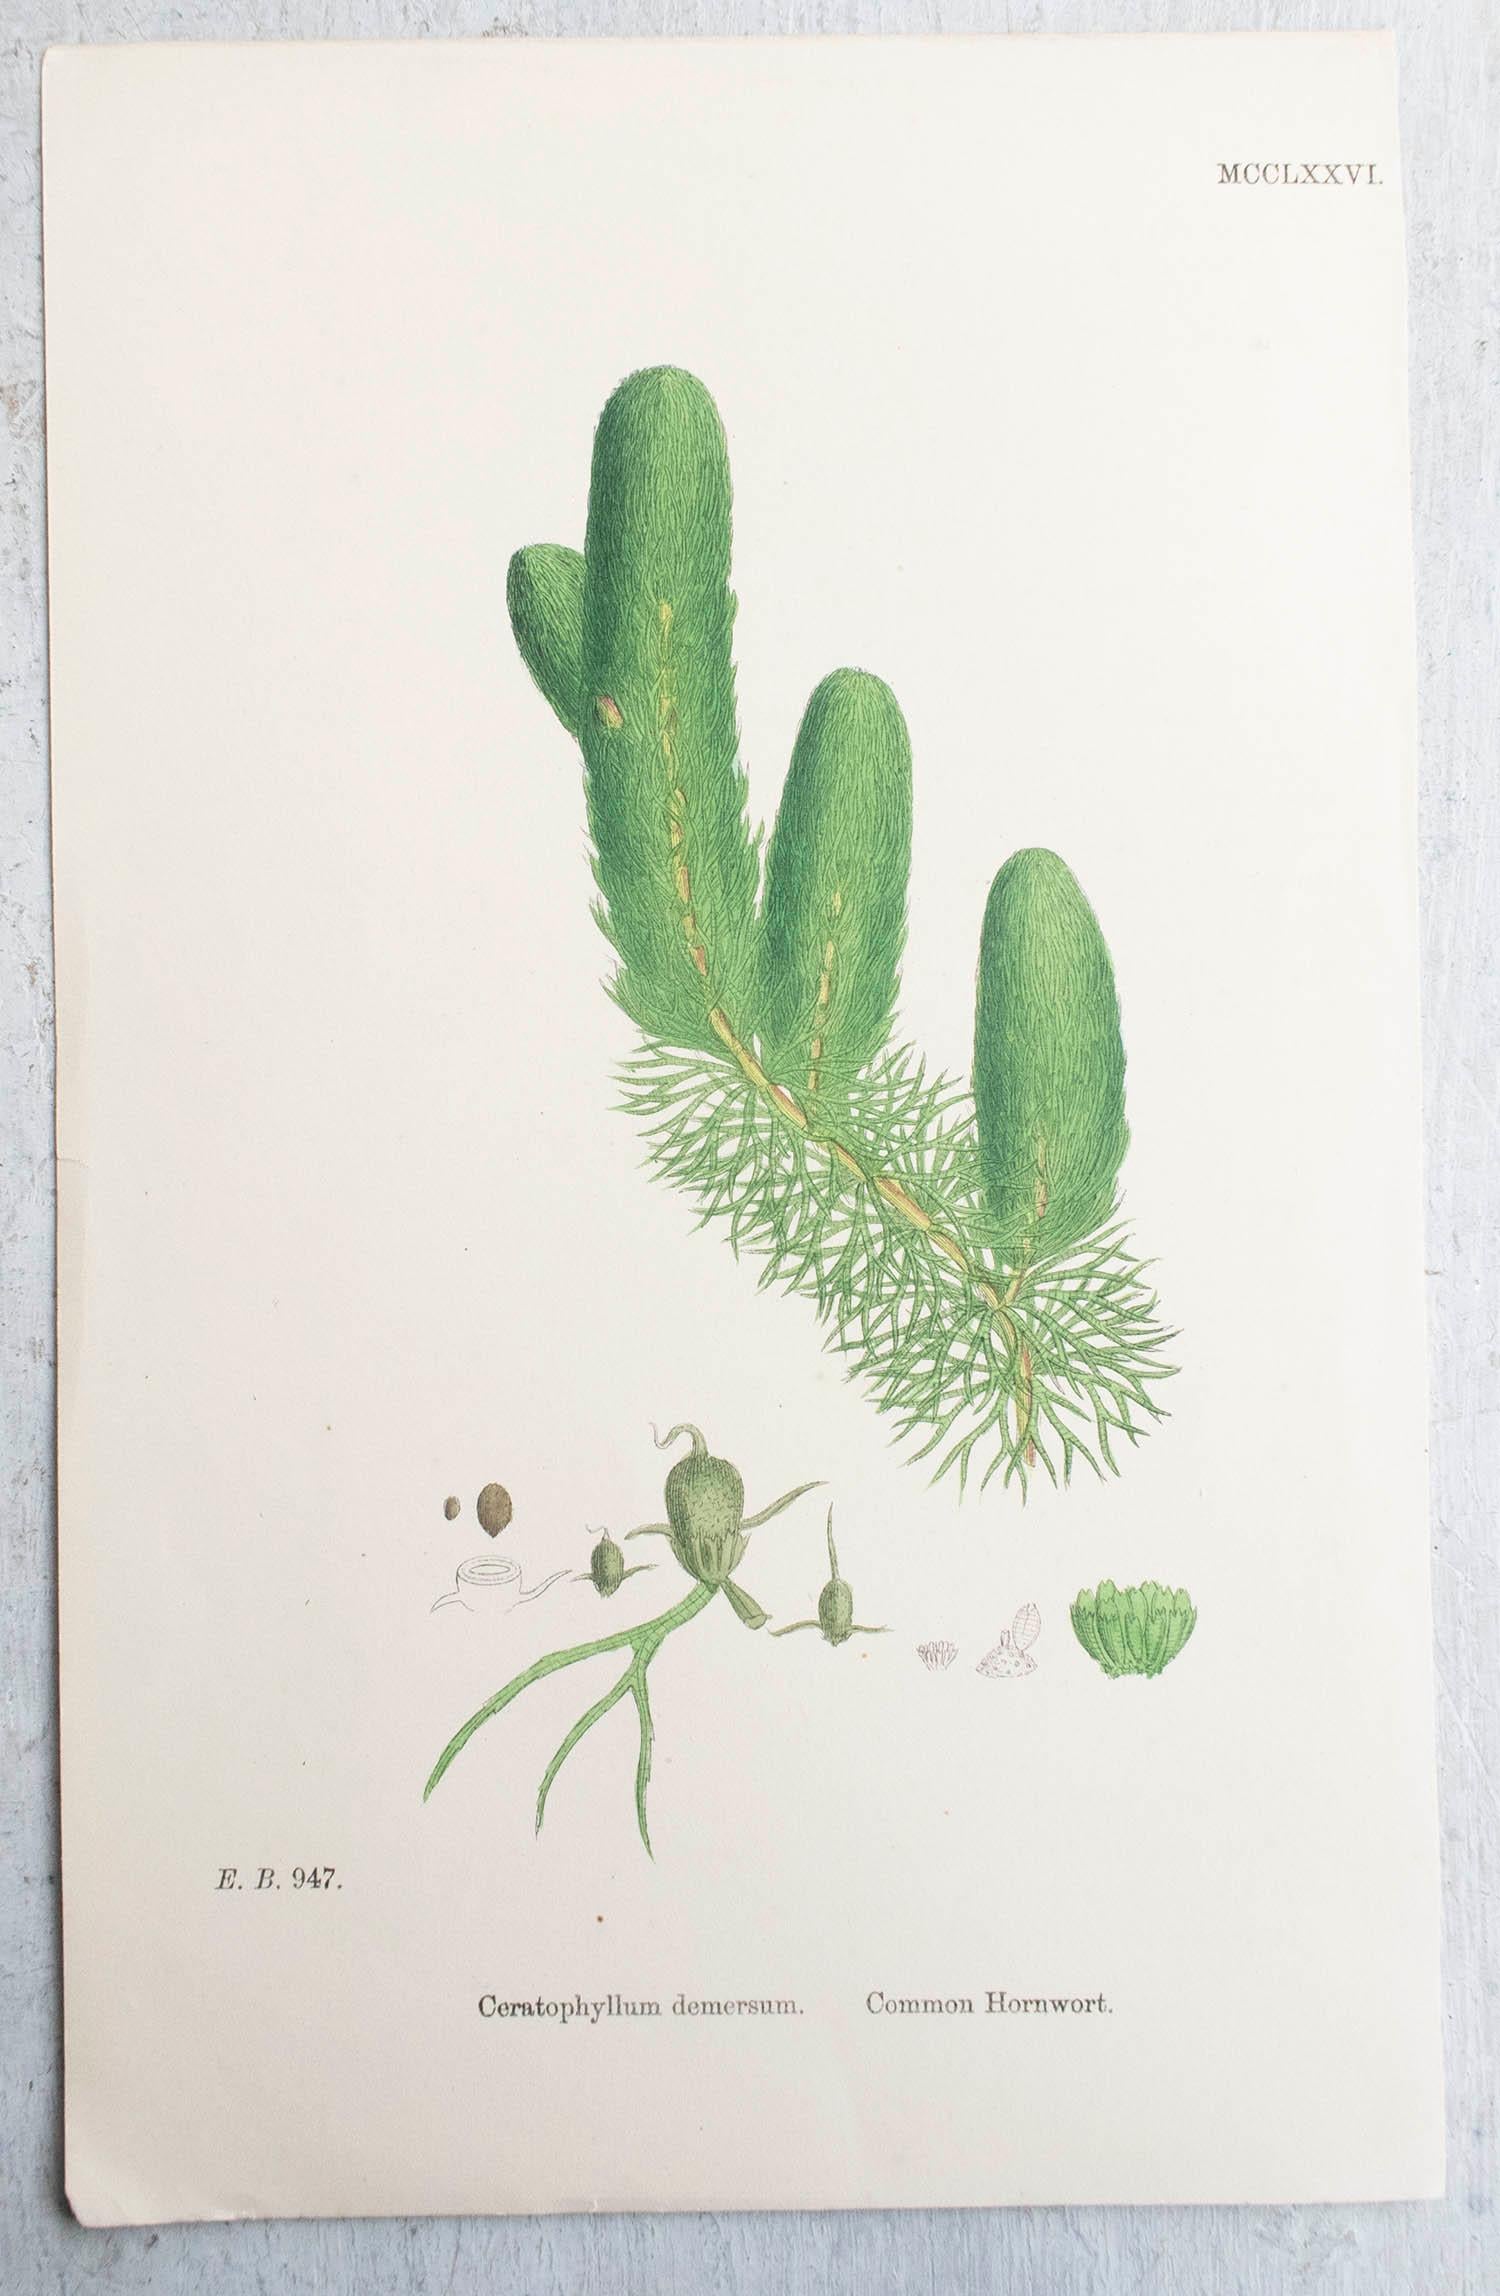 Merveilleux ensemble de 6 estampes botaniques

Lithographies d'après les dessins botaniques originaux de Hooker.

Couleur originale

Publié, vers 1850

Non encadré.

La mesure donnée est pour une impression.

